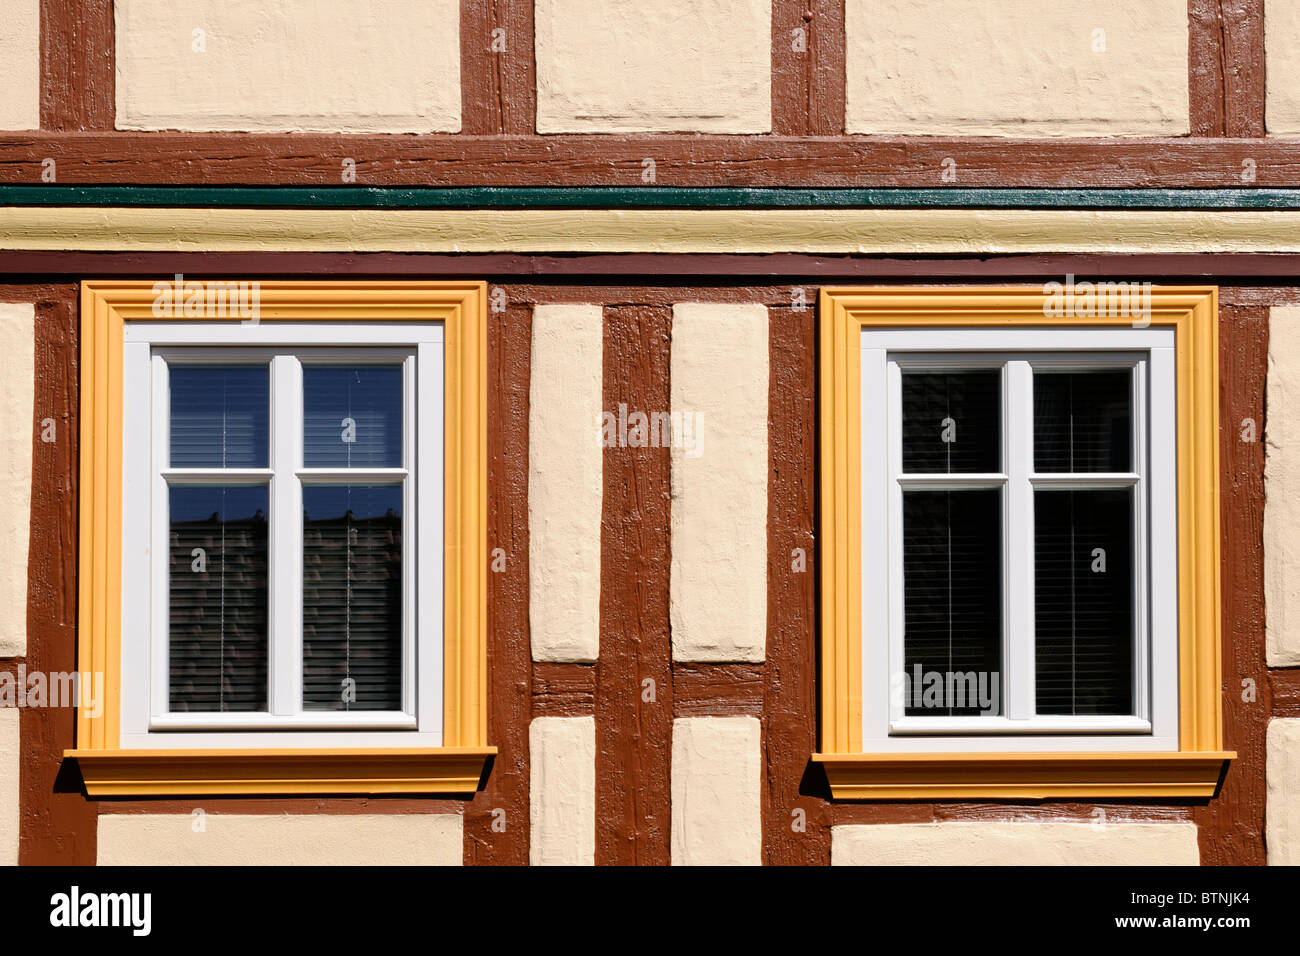 Fachwerkhaus mit Fenstern in gelb und weiß gestrichen. - Half-timbered house with windows painted in yellow and white. Stock Photo